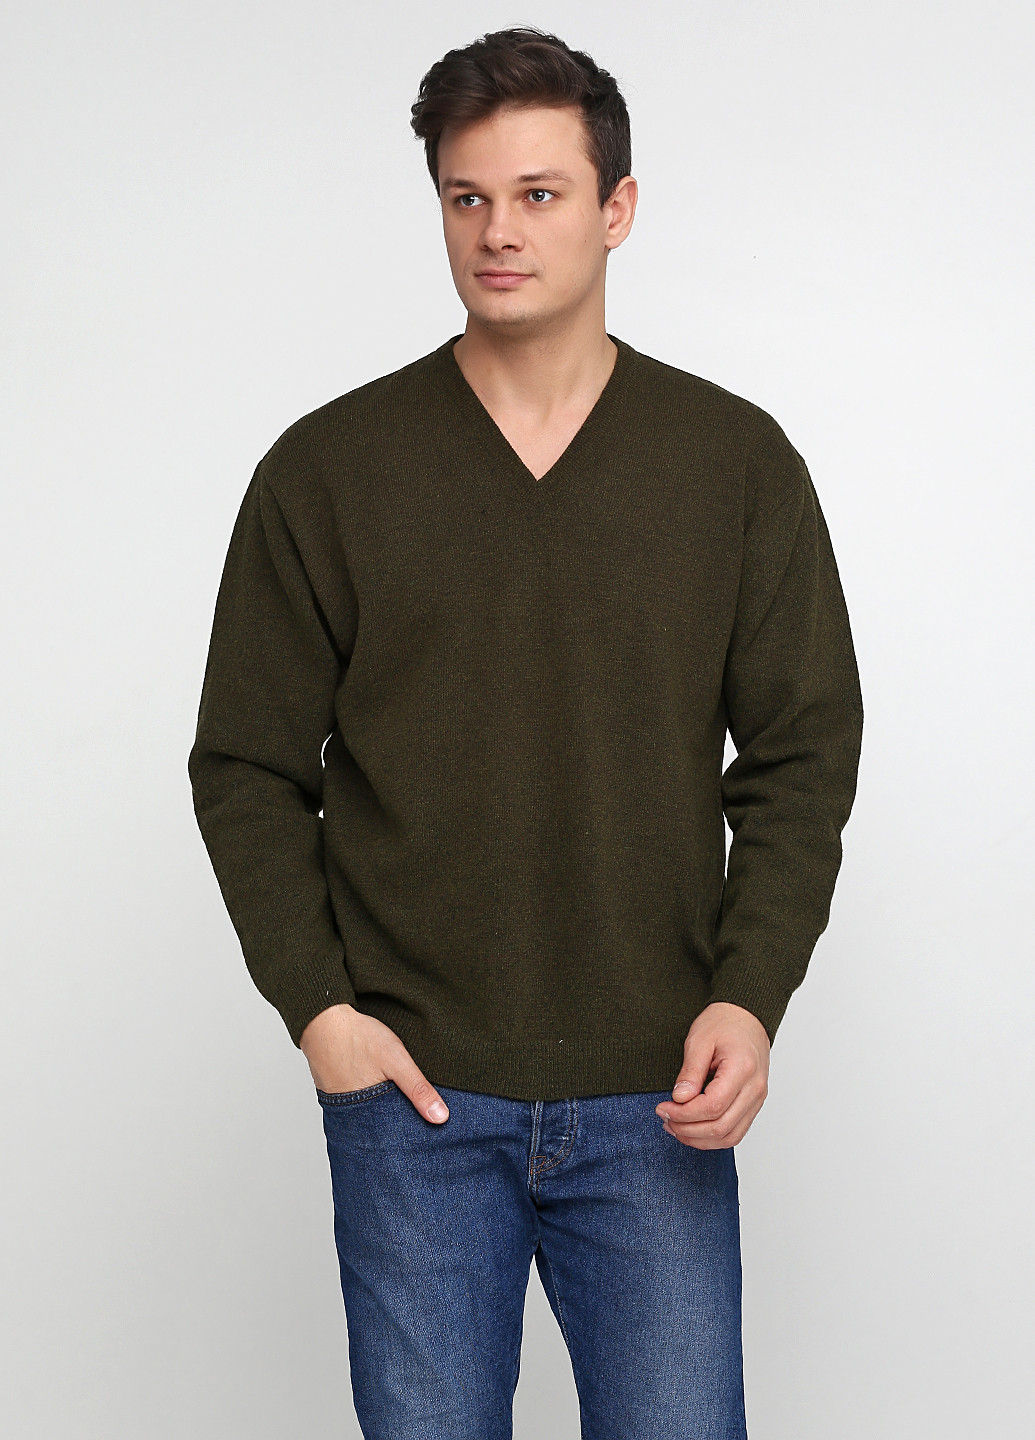 Оливковый демисезонный пуловер пуловер LENART